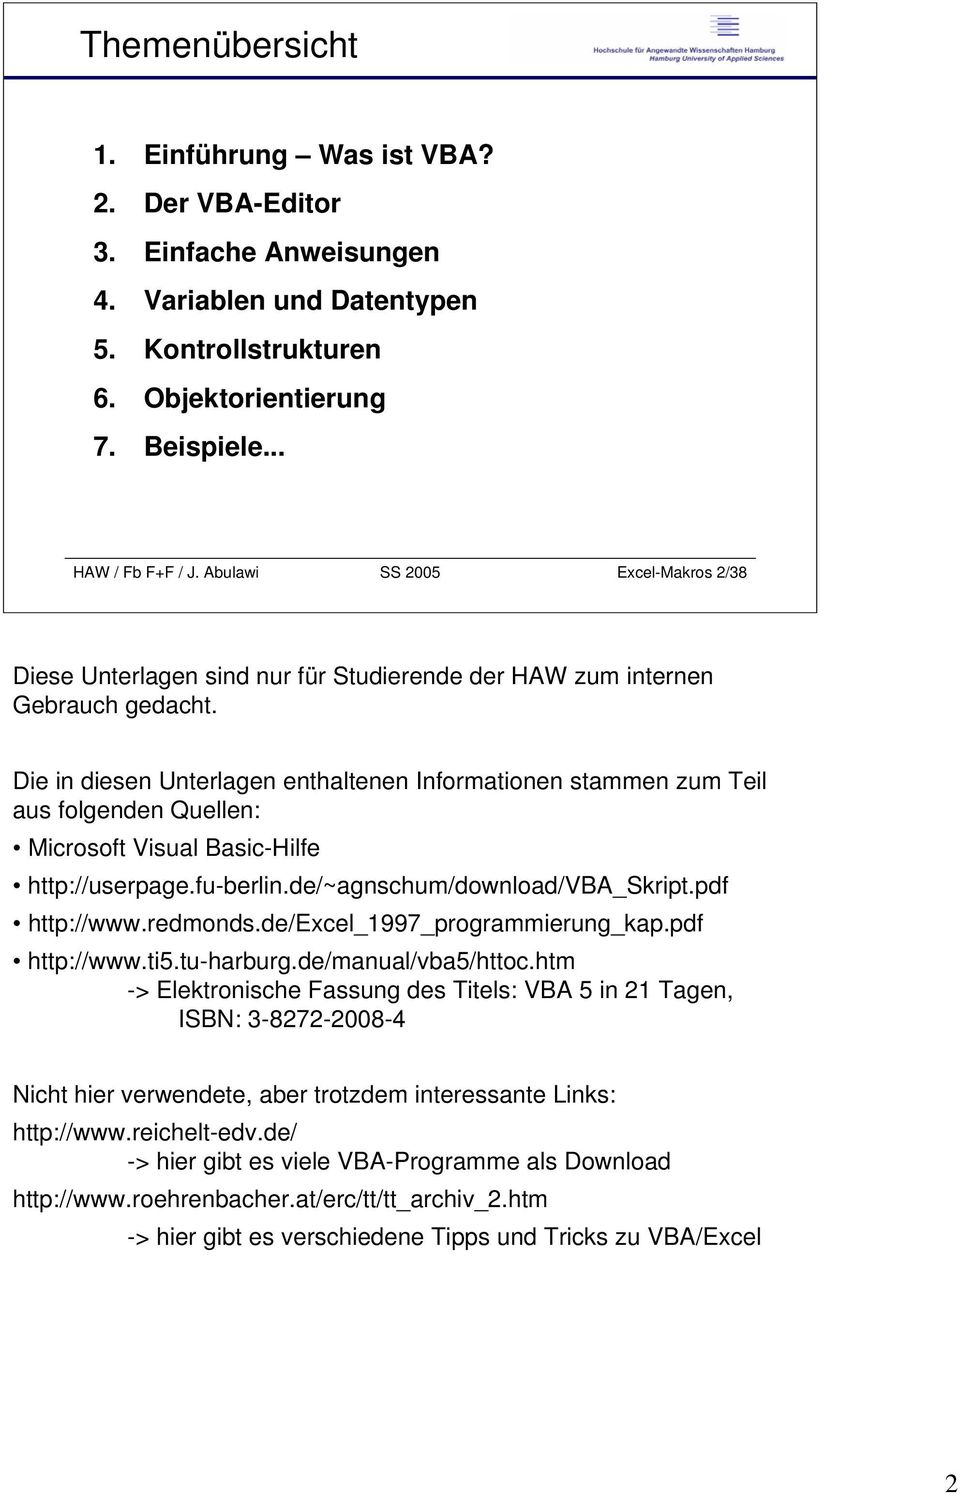 Die in diesen Unterlagen enthaltenen Informationen stammen zum Teil aus folgenden Quellen: Microsoft Visual Basic-Hilfe http://userpage.fu-berlin.de/~agnschum/download/vba_skript.pdf http://www.